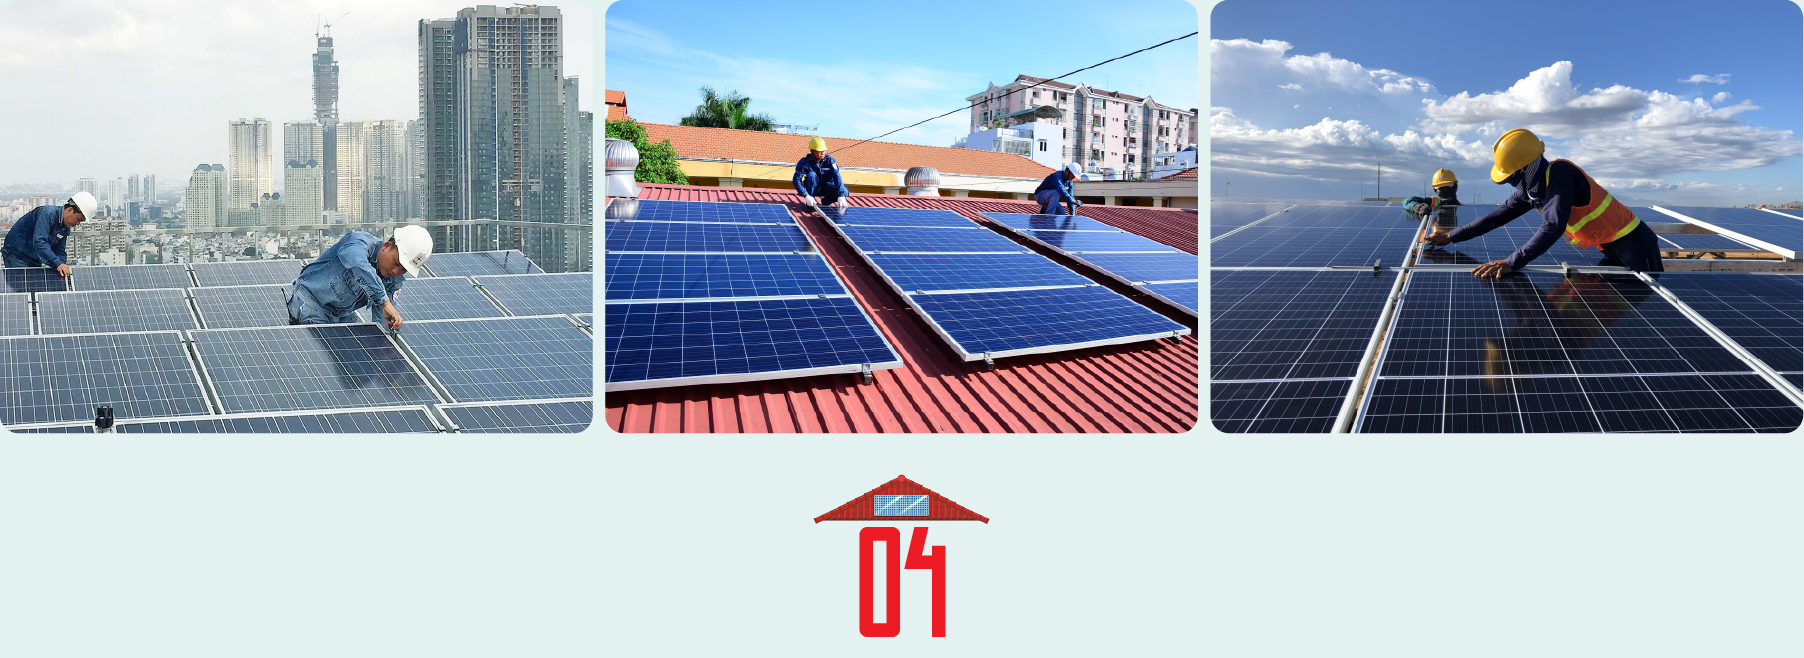 Gỡ điểm nghẽn, phát triển điện mặt trời mái nhà - Ảnh 5